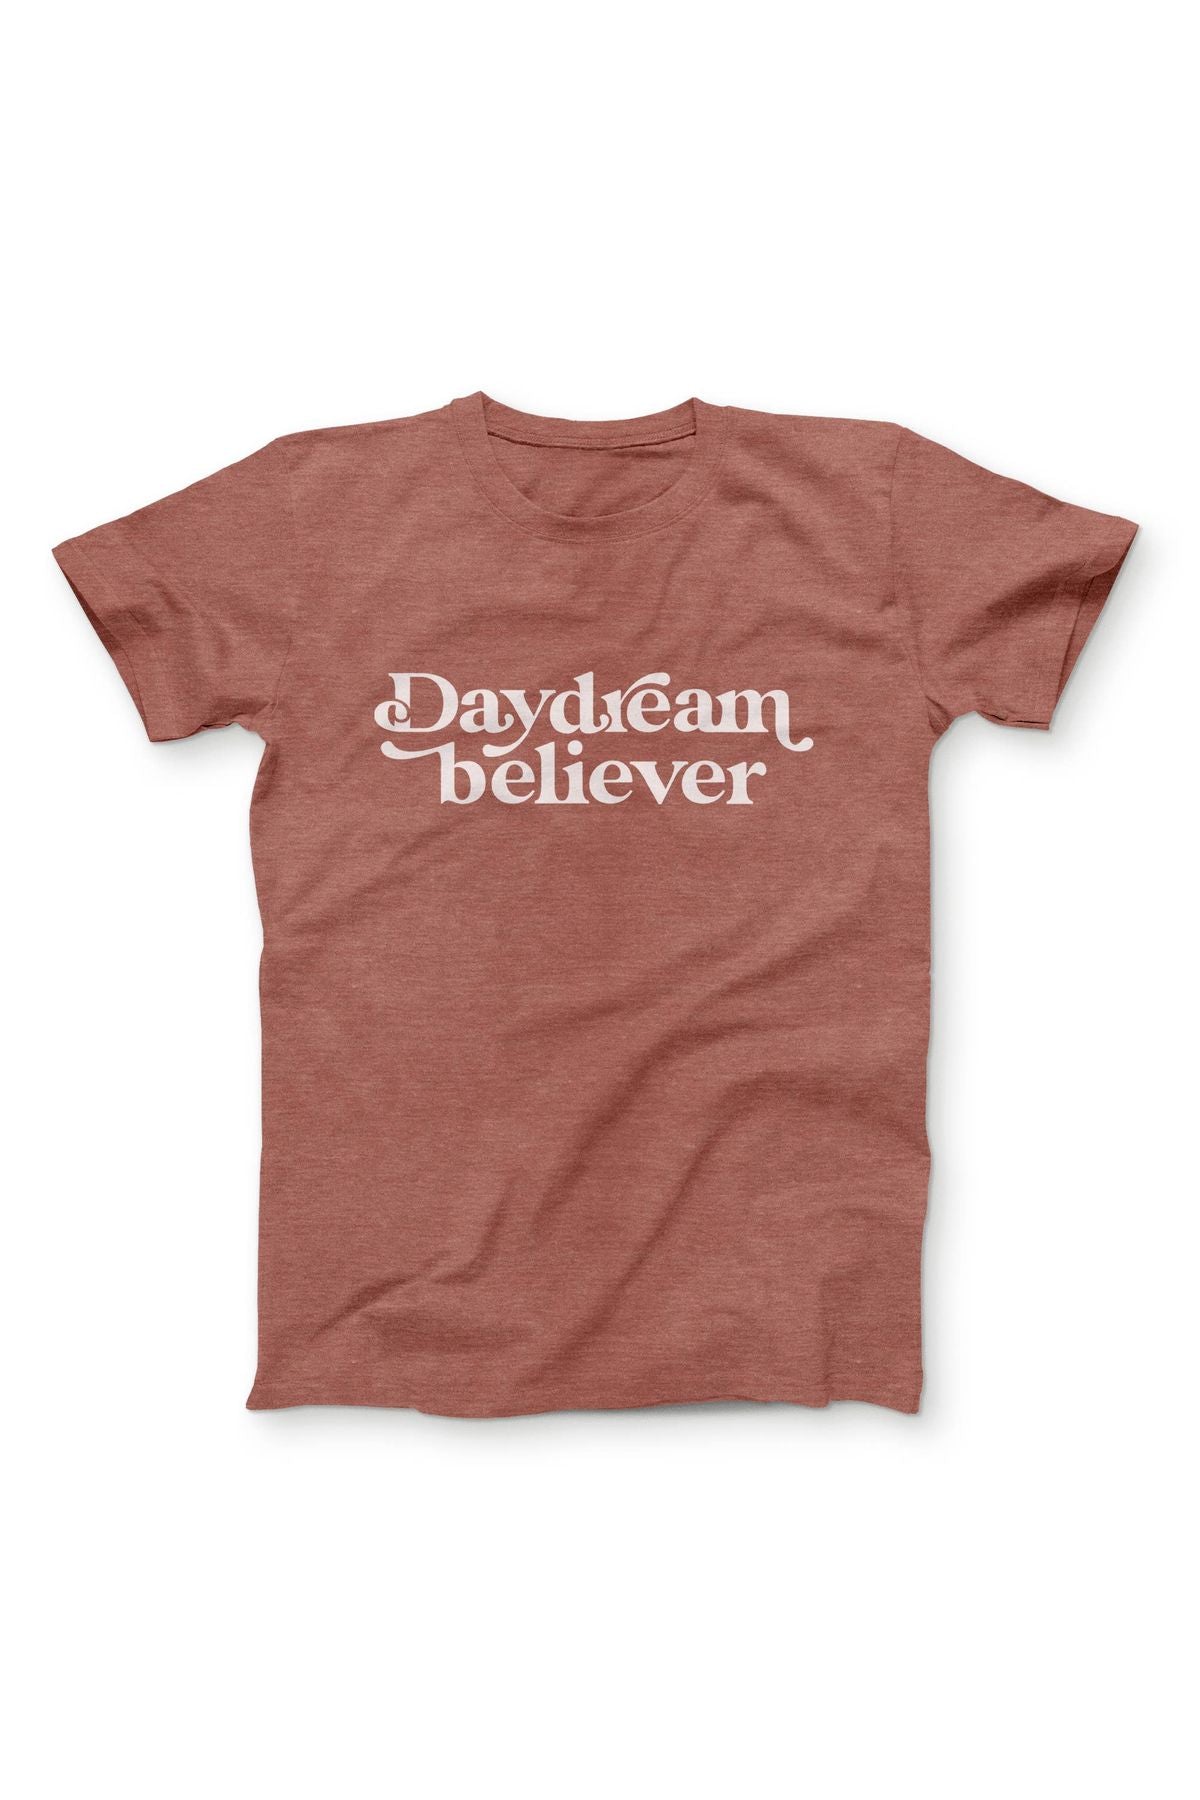 Daydream Believer Tee Shirt